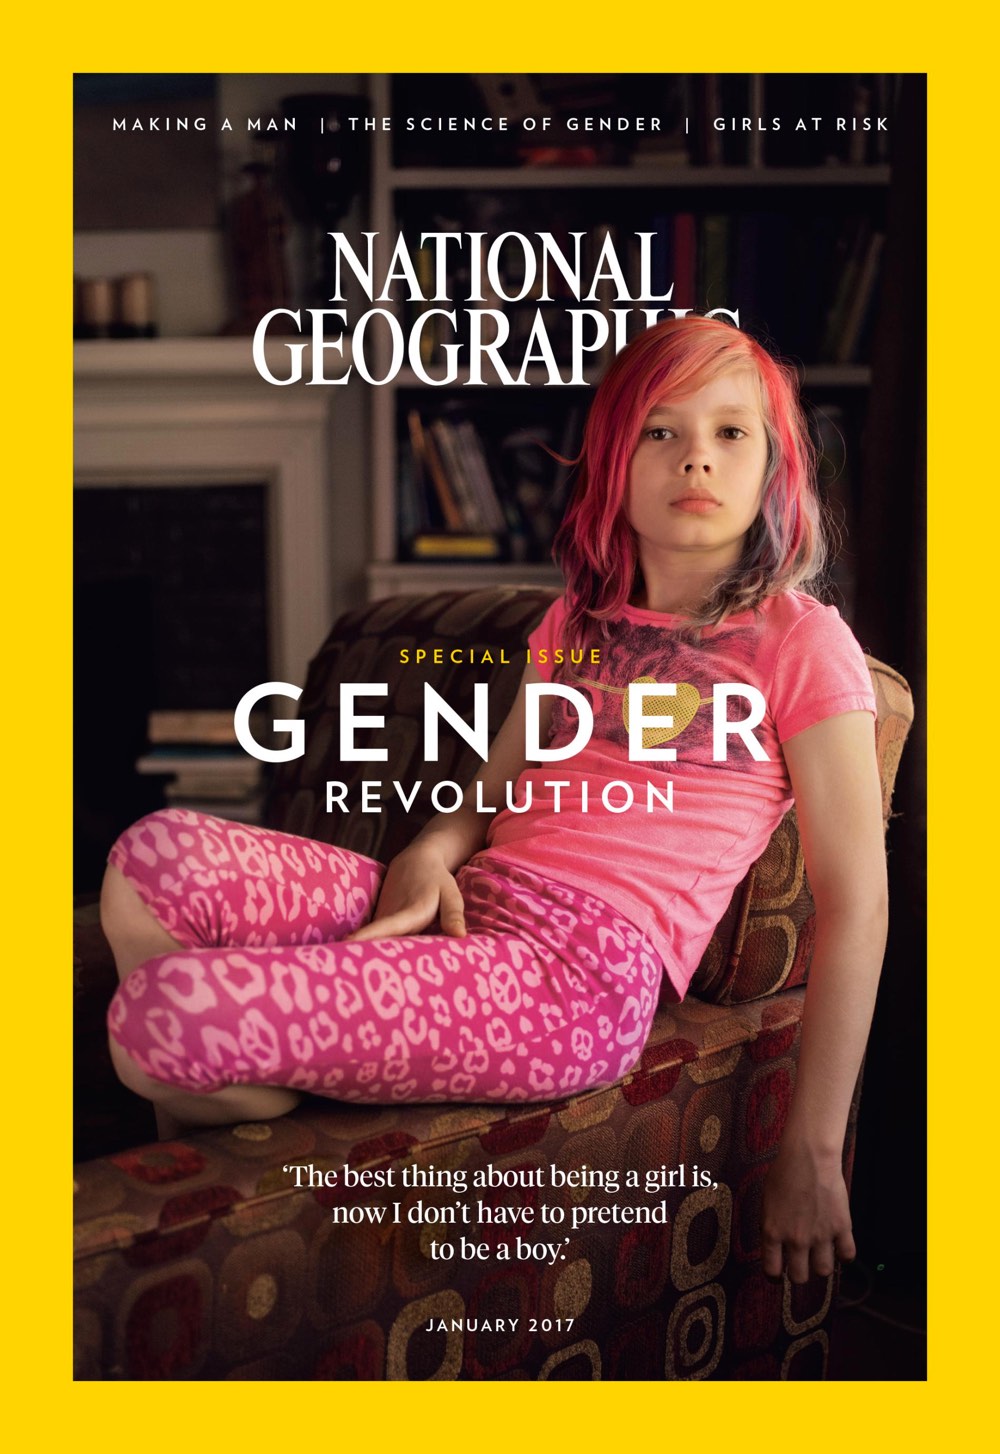 La copertina del National Geographic con una ragazzina transgender